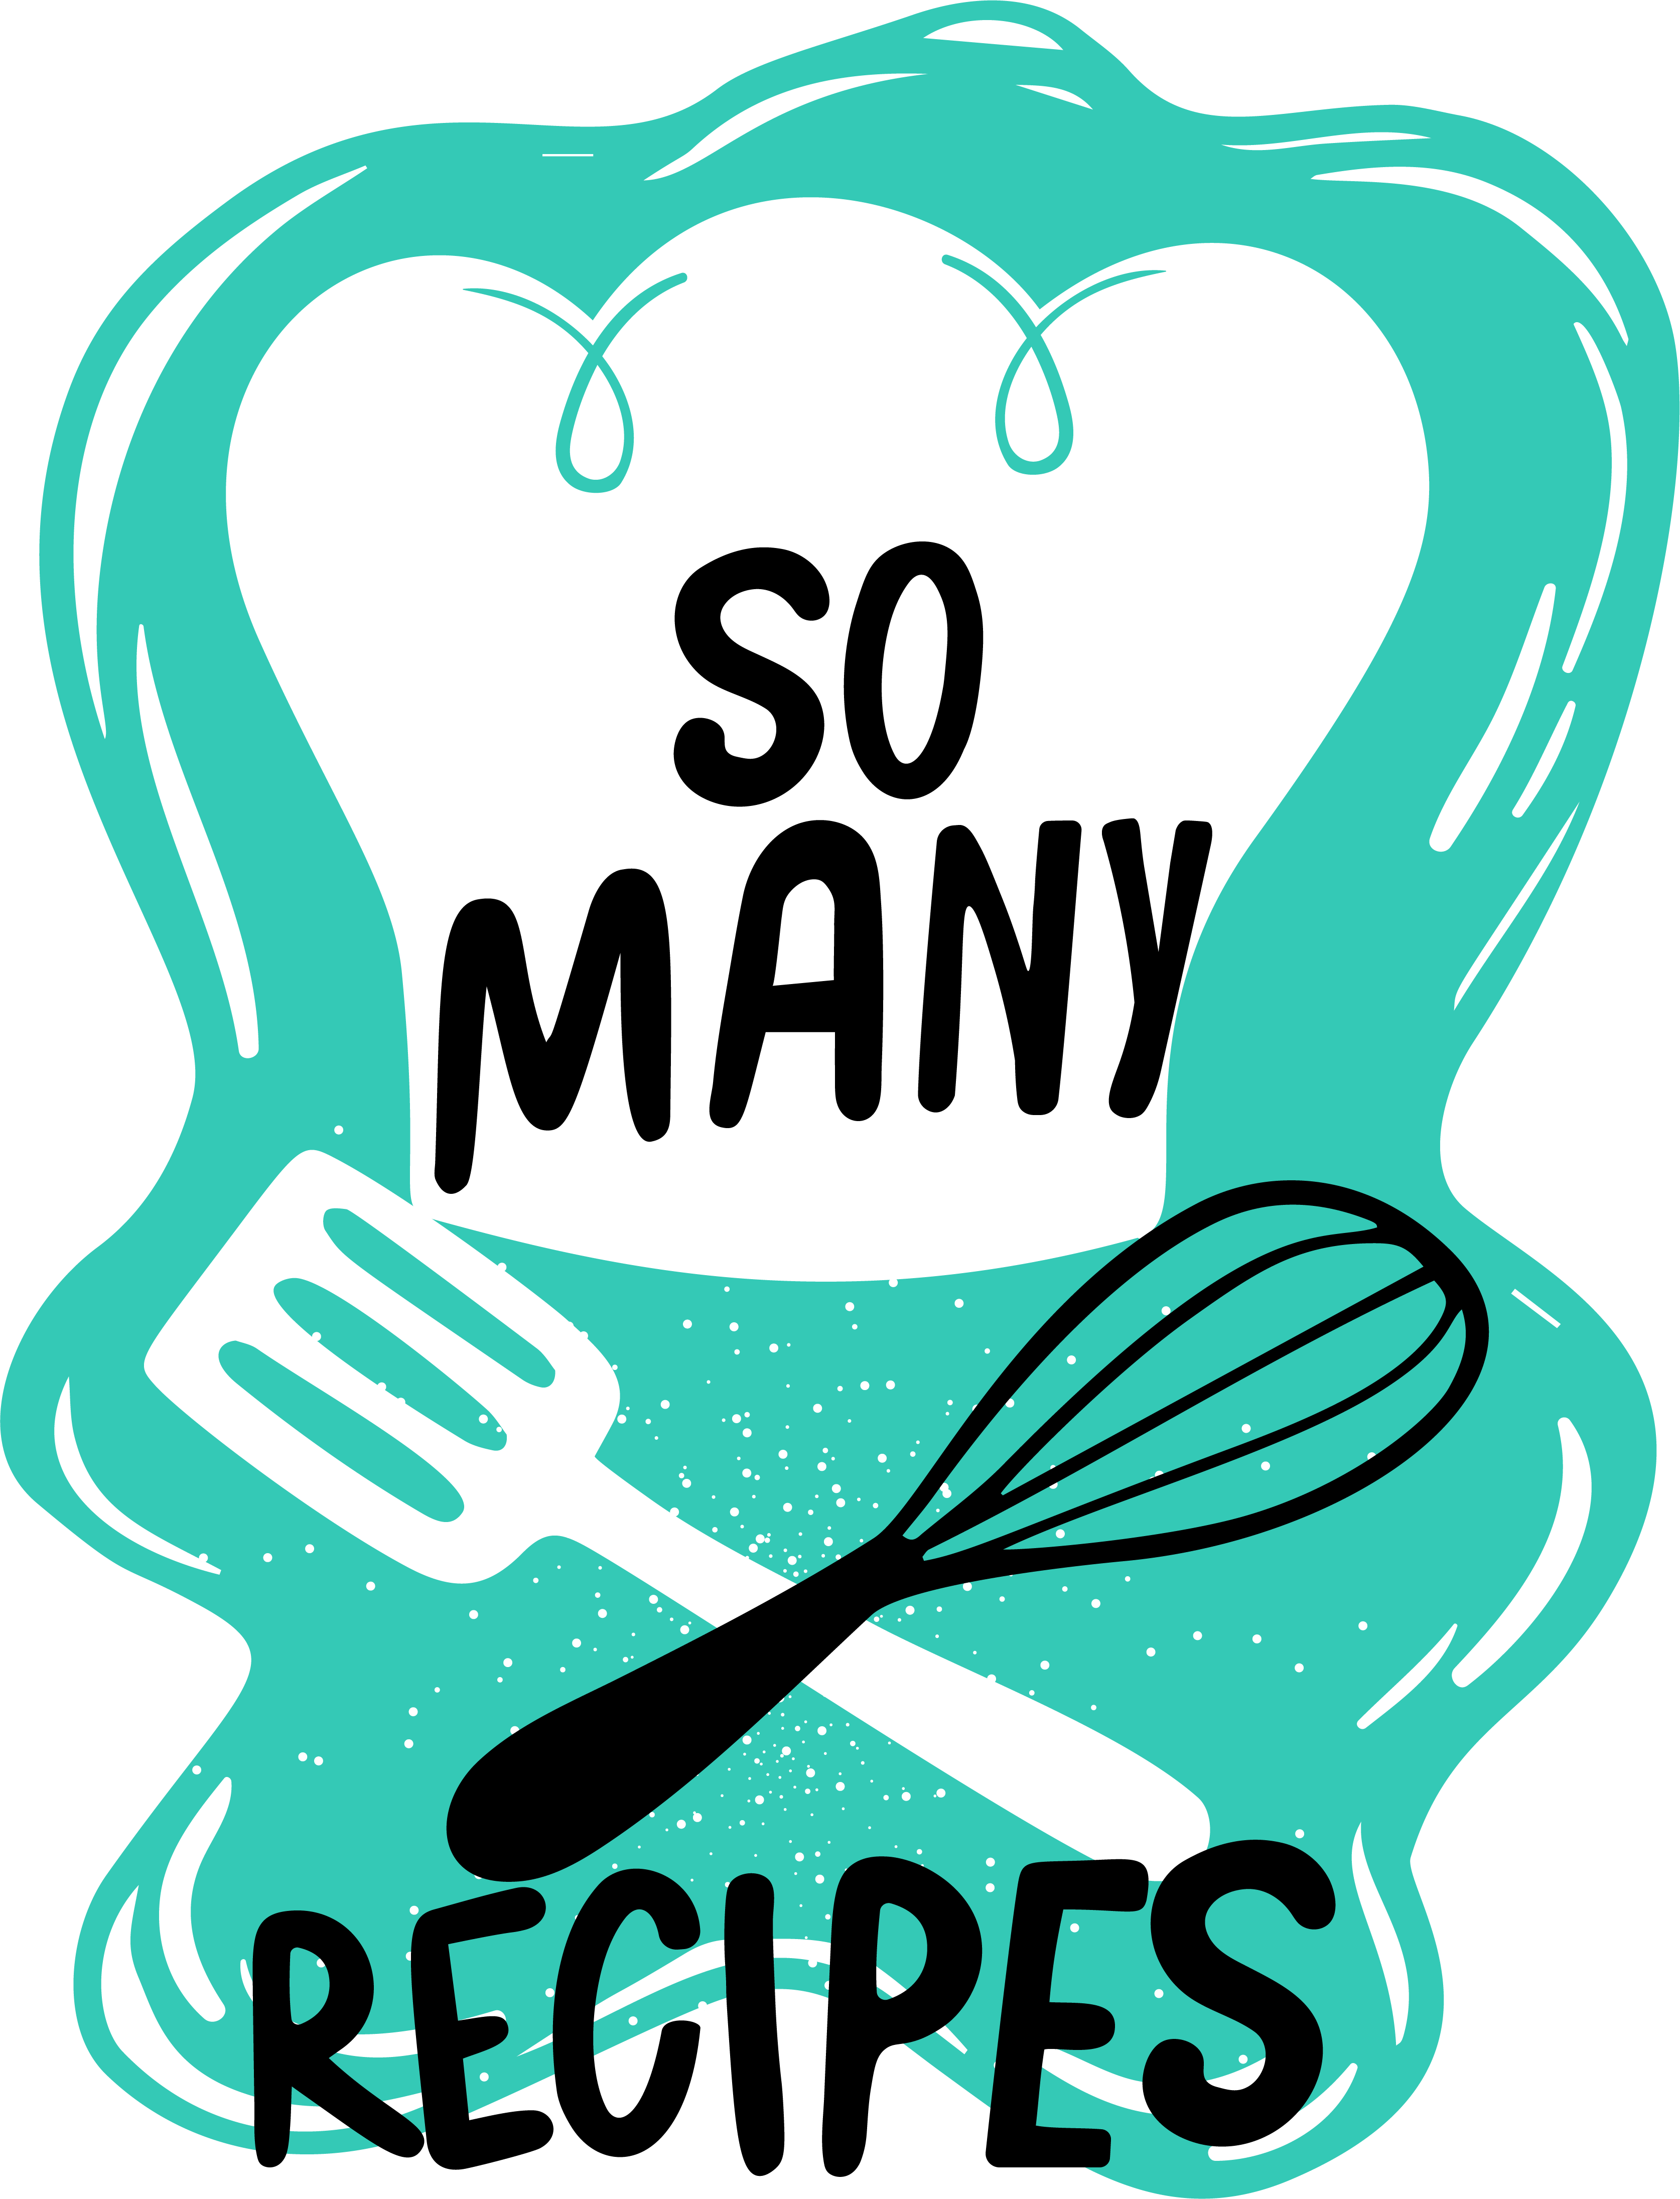 logo with slogan "so many recipes"